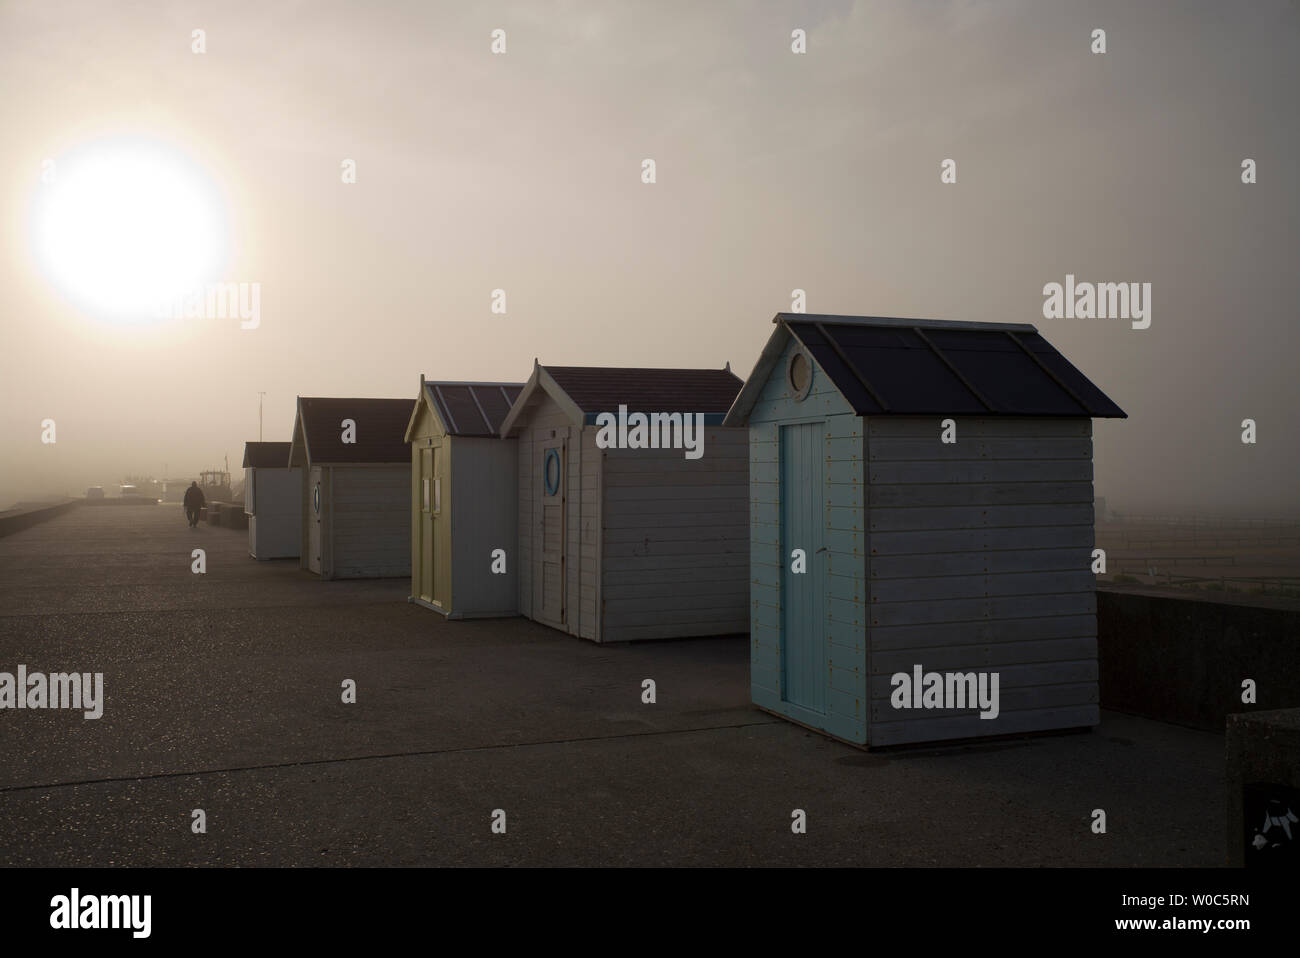 Untidy row of beach huts, hazy sun, Normandy, France Stock Photo